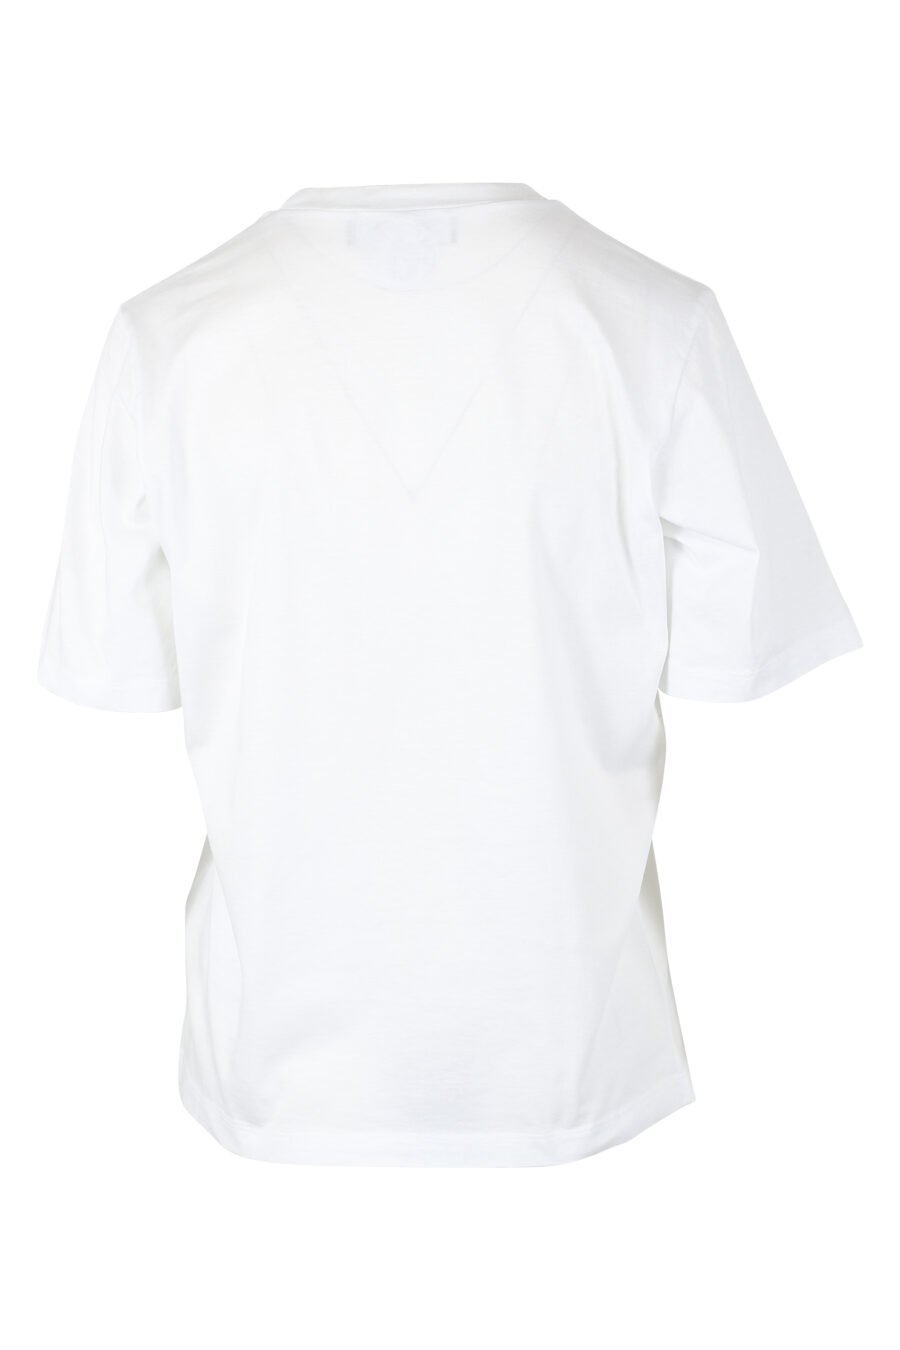 T-shirt branca com o logótipo "icon" e um cão surfista - IMG 9786